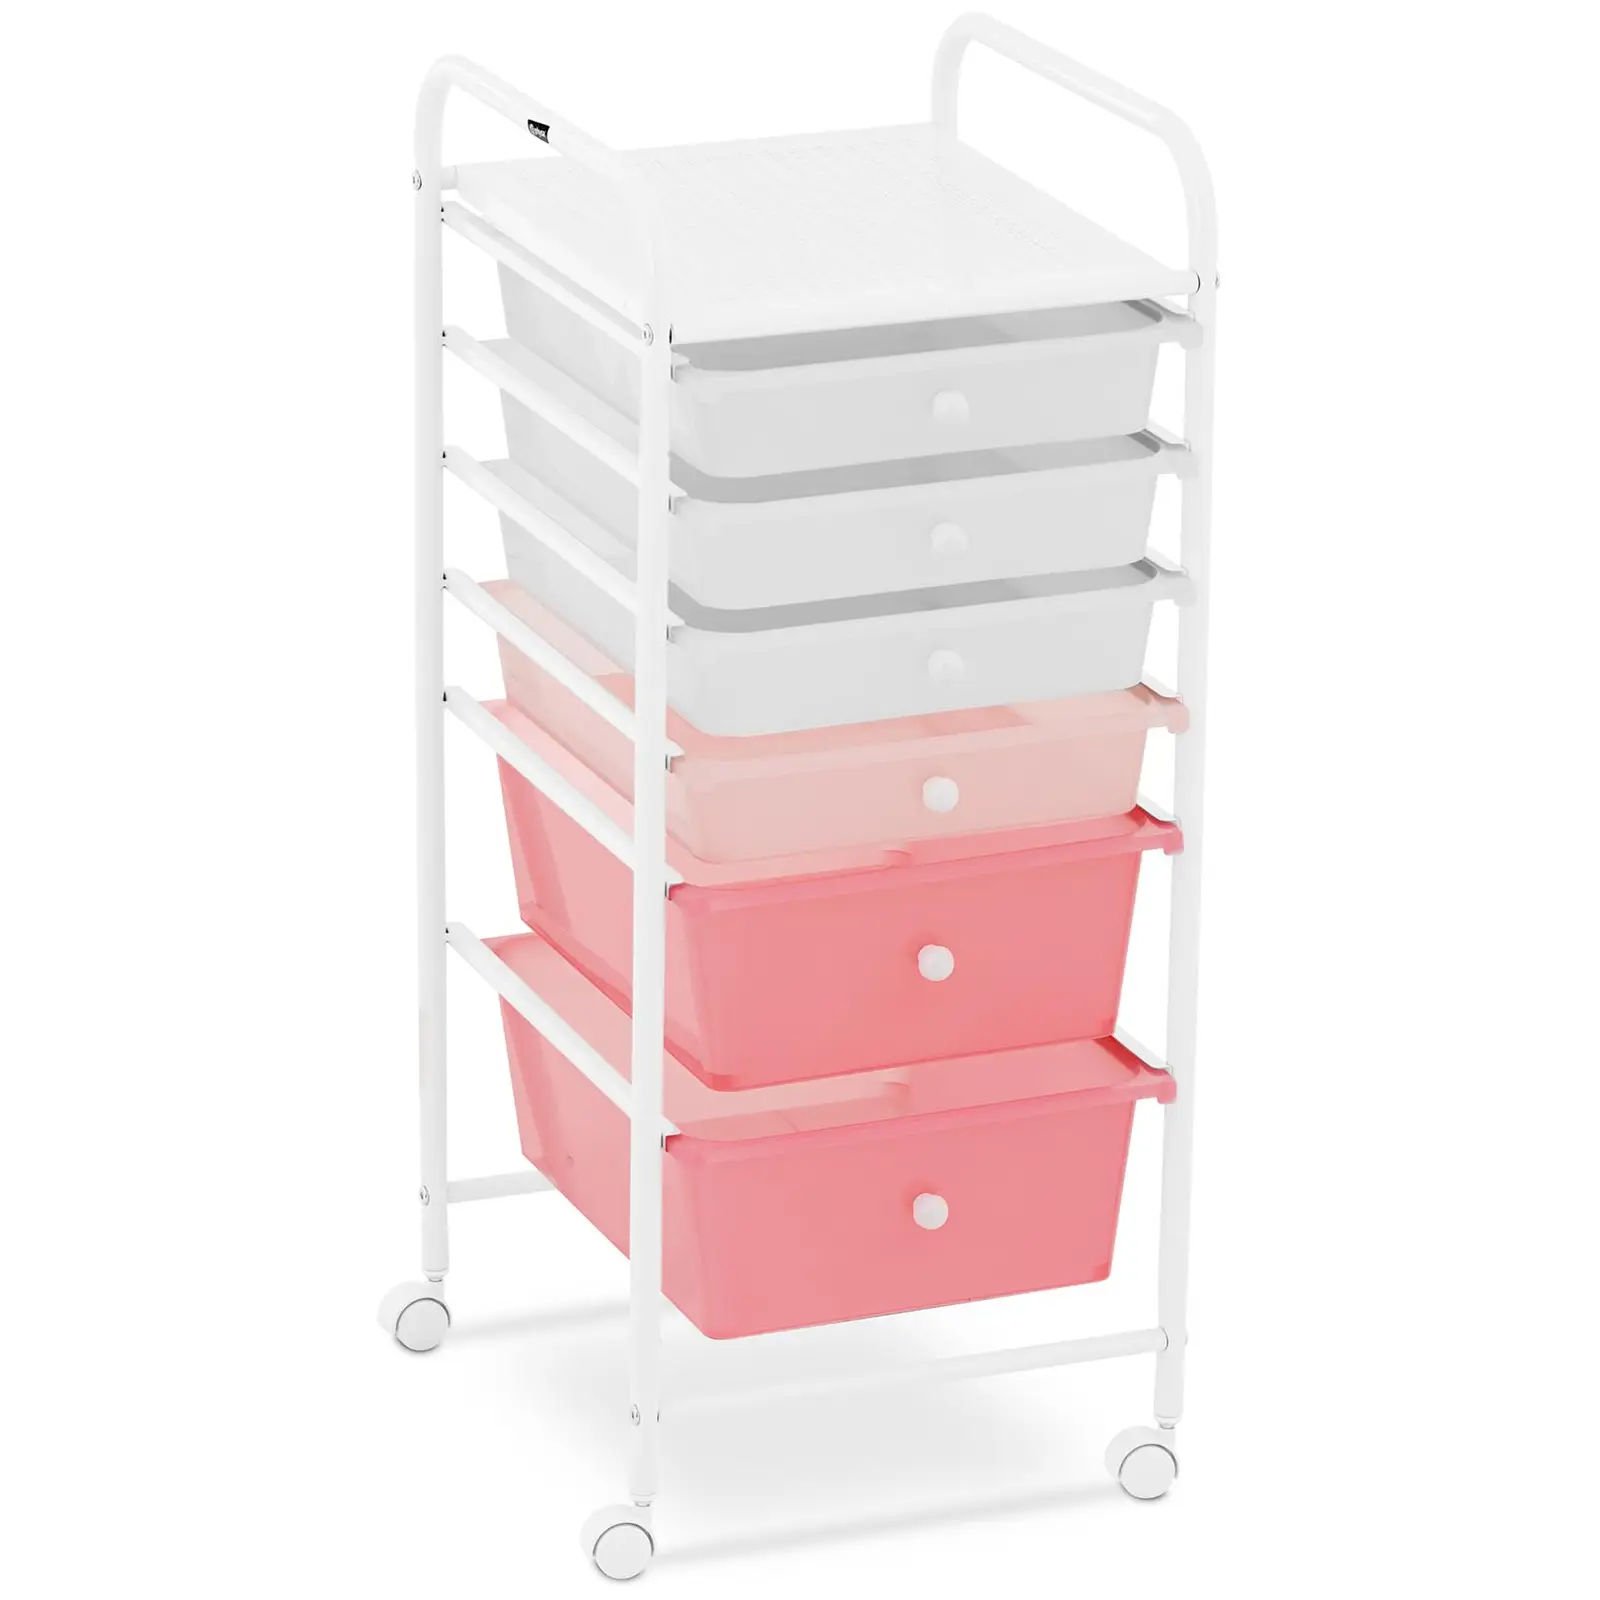 Rullebord med skuffer - 6 skuffer - rosa og hvid